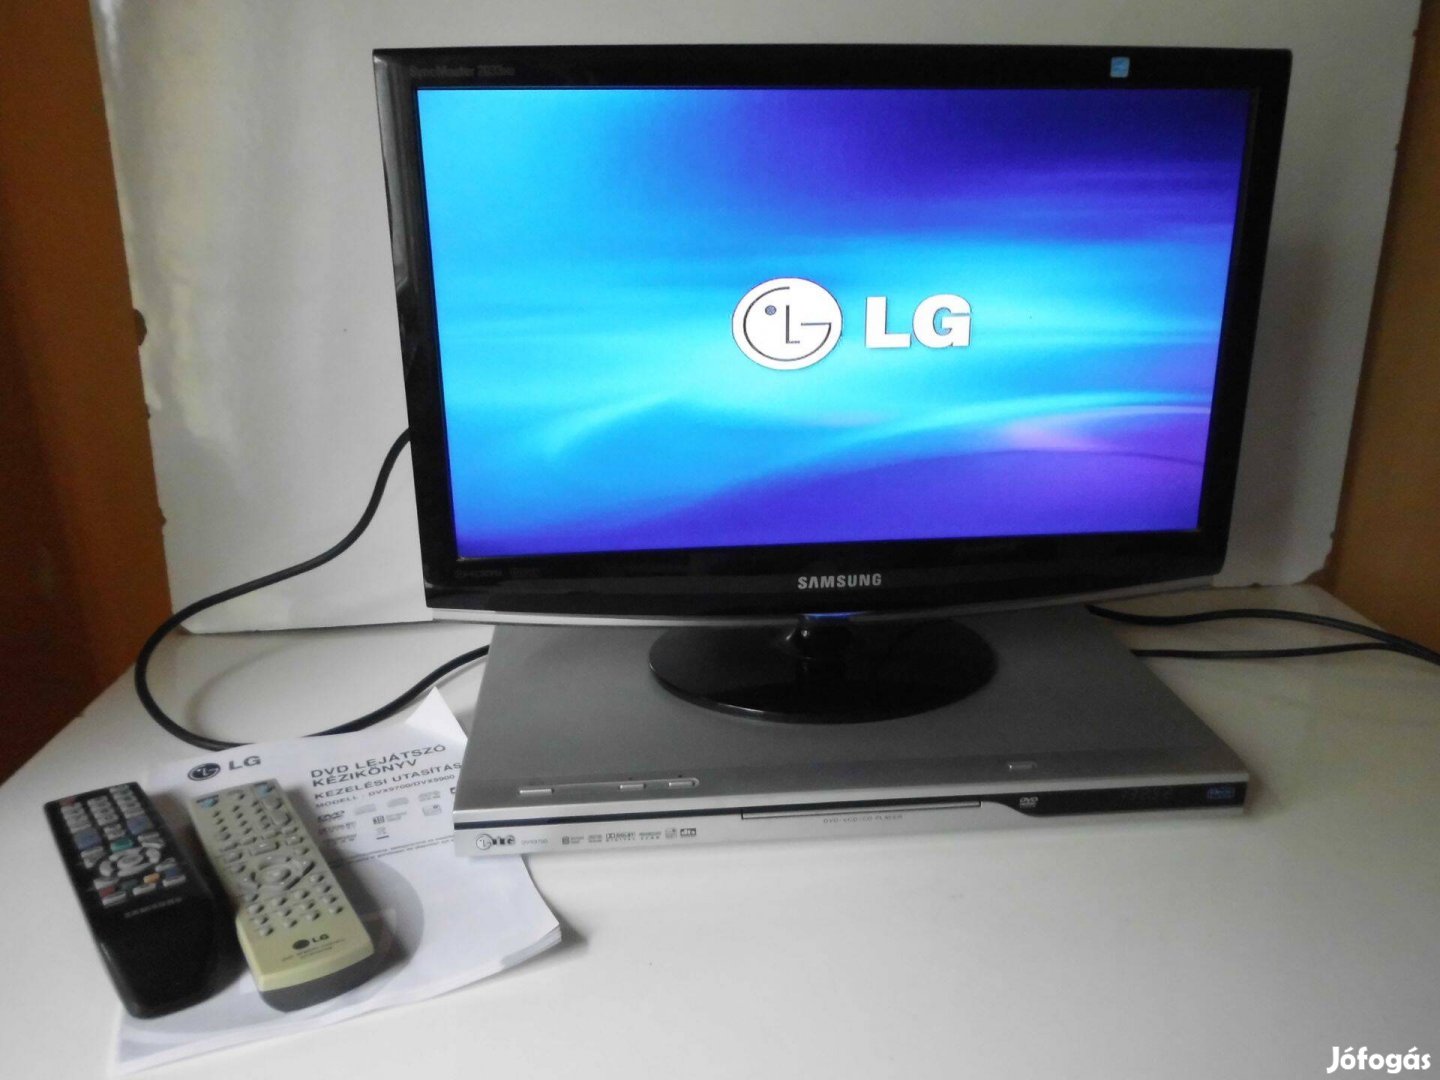 Samsung CF20MS tv és LG Dvx9700 DVD lejátszó együtt távvezérlőkkel